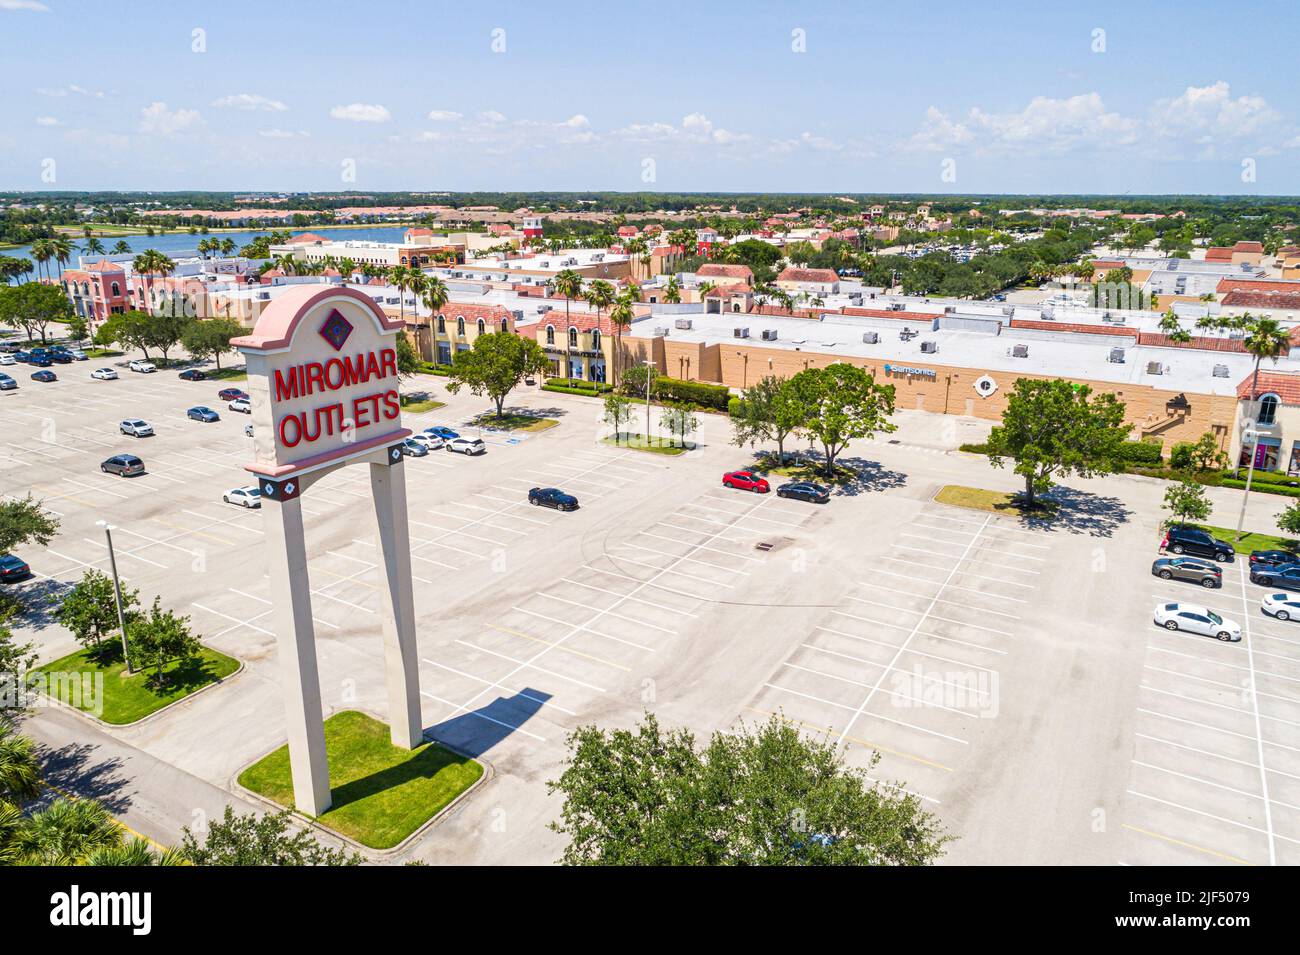 Estero Florida, centro comercial outlet de marca de diseño Miromar Outlets, vista aérea desde arriba, aparcamiento Foto de stock